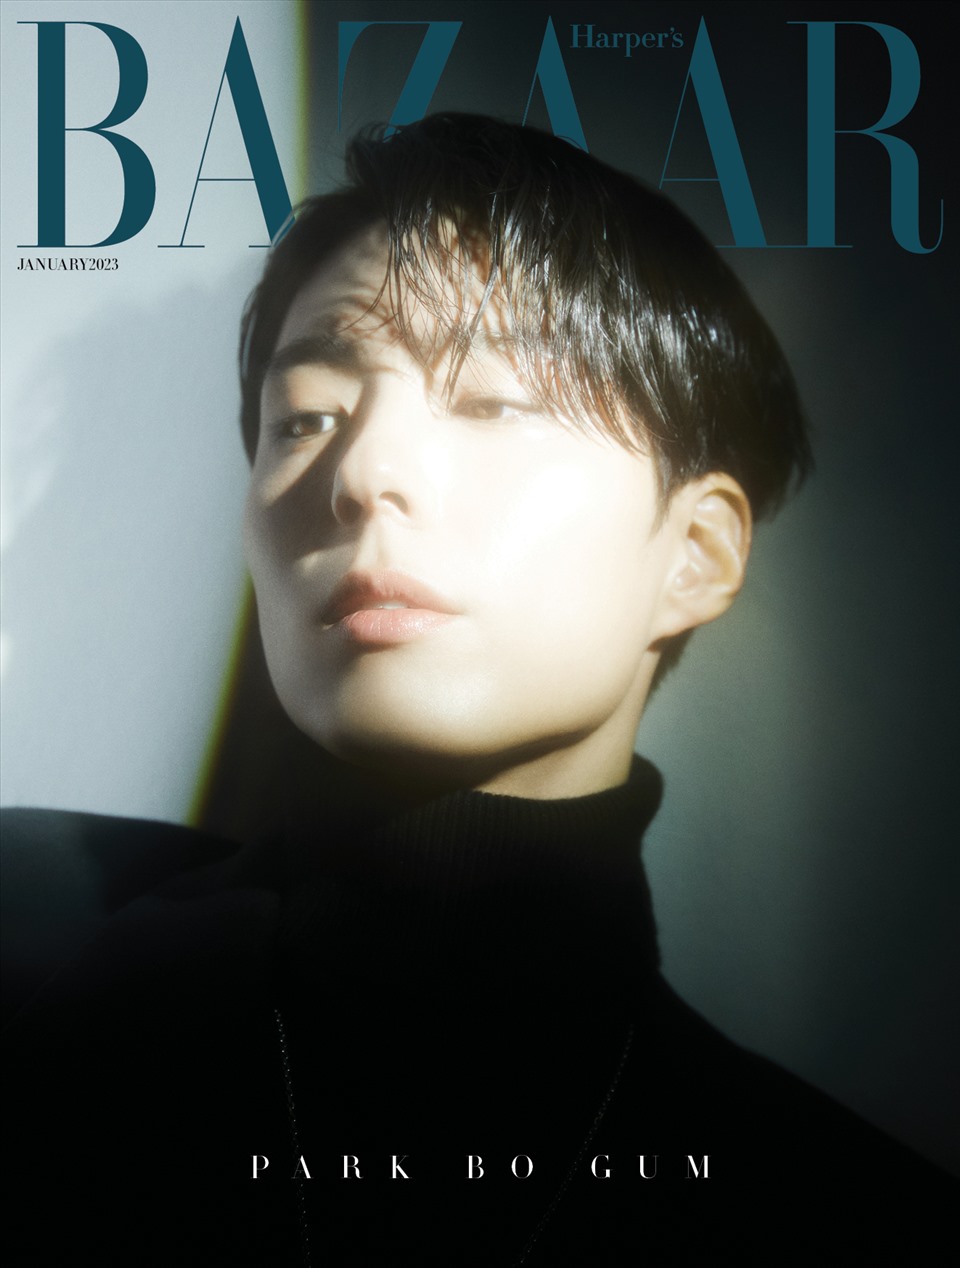 Park Bo Gum thể hiện thần thái quyến rũ và thả dáng đầy chuyên nghiệp trên trang bìa tạp chí. Ảnh: Harper's Bazaar Korea.